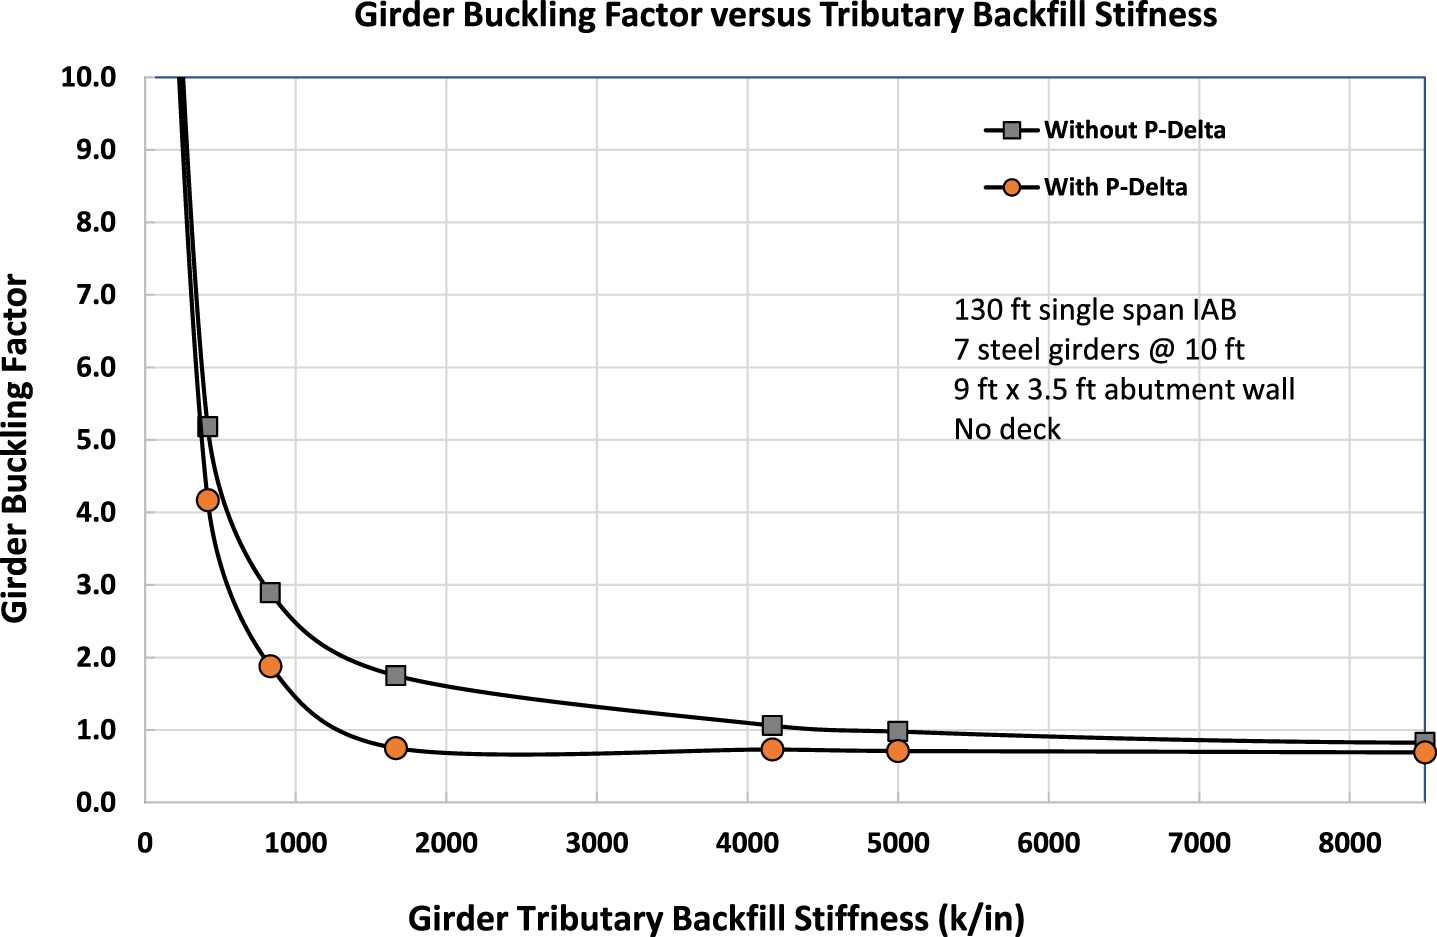 Girder buckling factor versus tributary backfill stiffness.